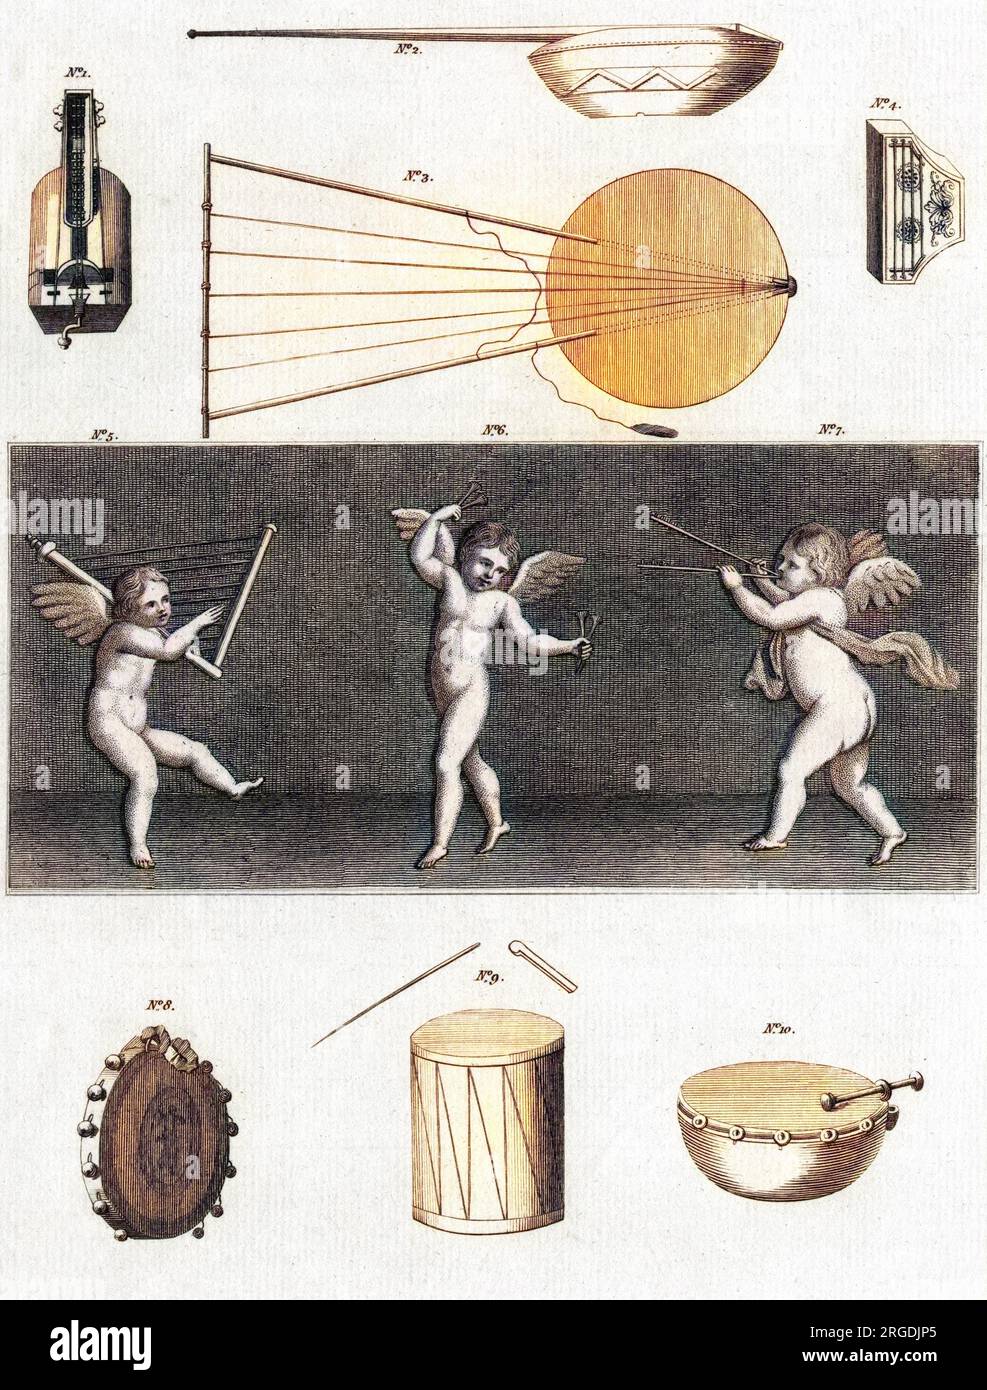 Una selezione di antichi strumenti musicali. 1 - Una sinfonia, o violino. 2 e 3- strumenti egiziani del XVIII secolo. 4 - Sackbut. 5, 6 e 7 - musicisti cherubici di Ercolano. 8 - un toph (tamburo). 9 - un tamburo. 10 - un kettledrum. Foto Stock